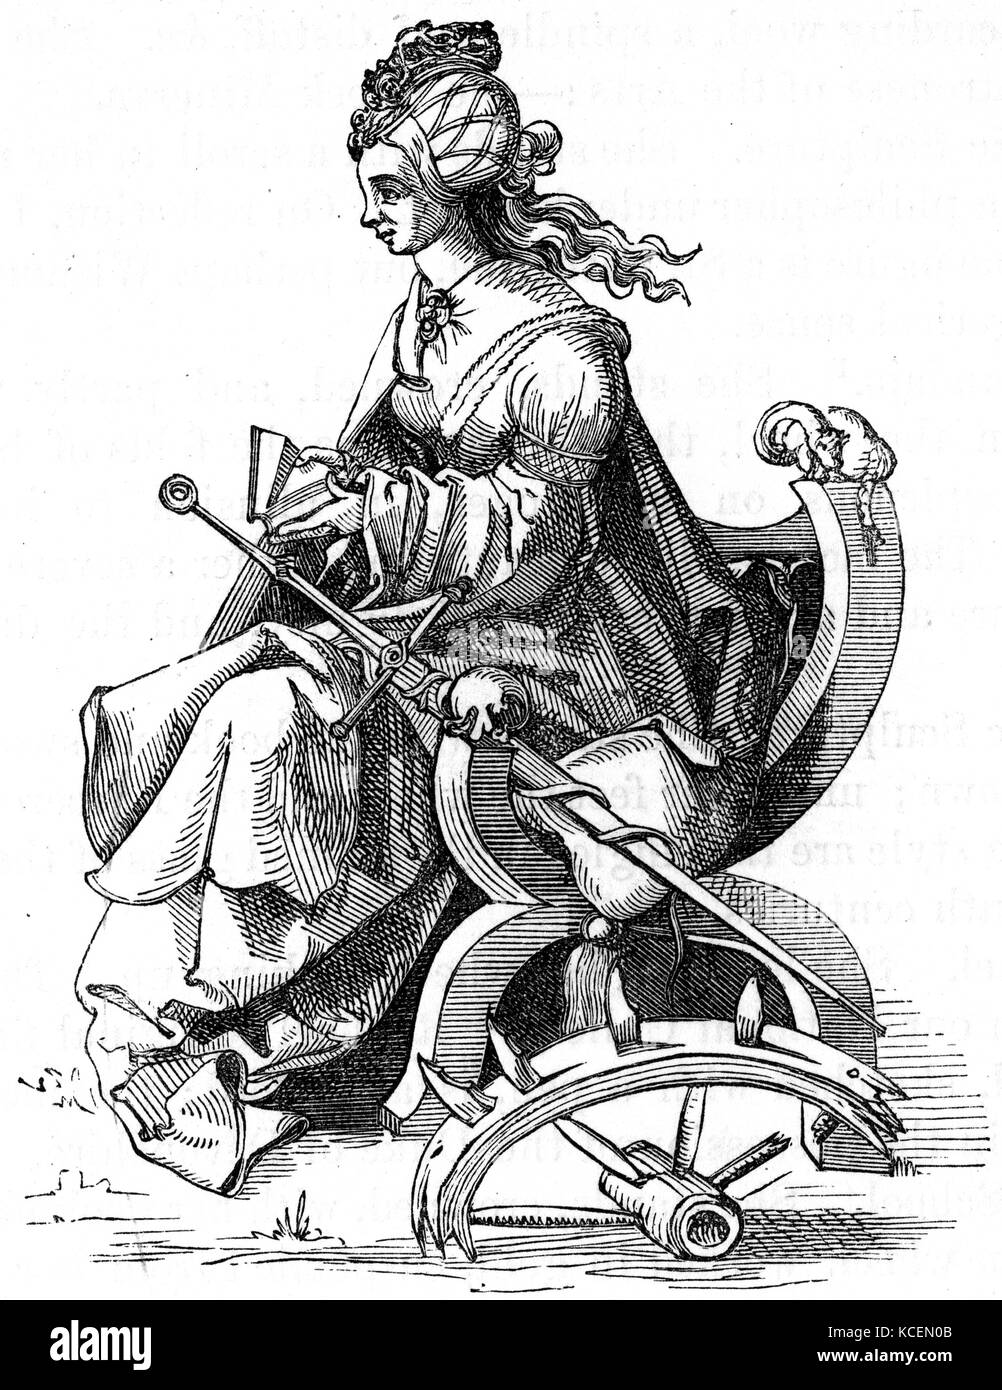 Albrecht Dürer's Interpretation des Martyriums der Hl. Katharina von Alexandria, auch als Hl. Katharina von das Rad bekannt war, nach der Tradition, ein christlicher Heiliger und Jungfrau, die im frühen 4. Jahrhundert in den Händen der heidnischen Kaiser Maxentius gemartert wurde. Stockfoto